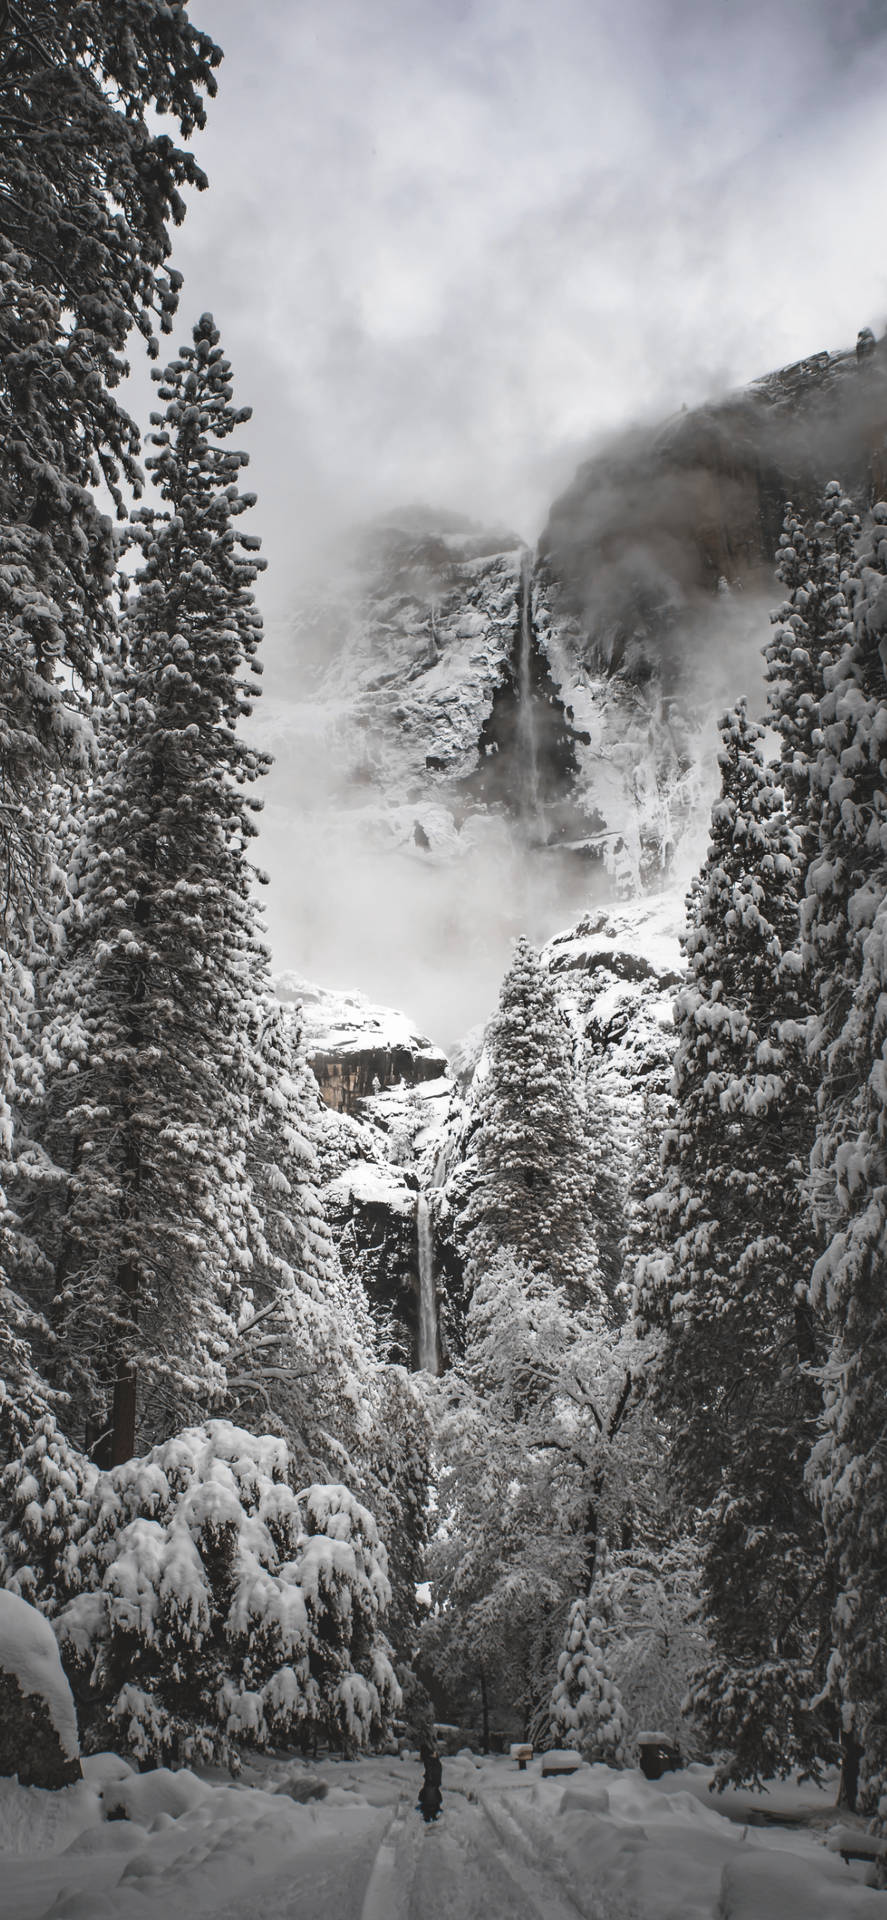 WallpaperNyd et naturligt syn med Yosemite IphoneWallpaper: Wallpaper